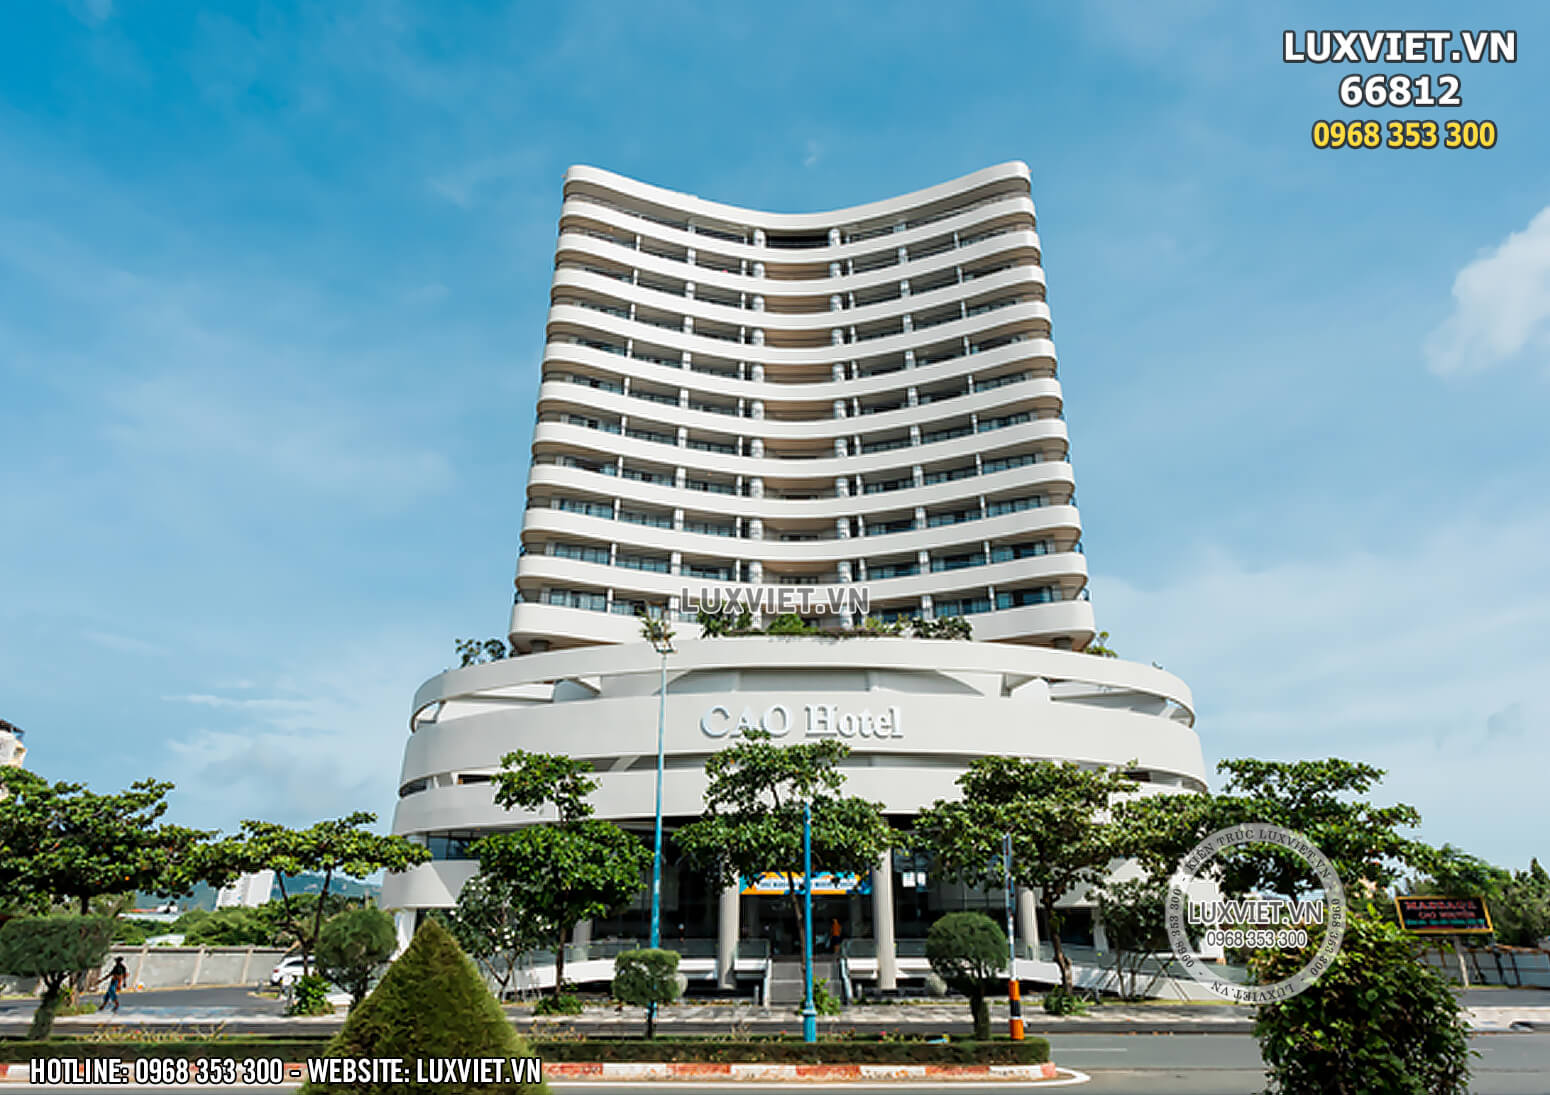 Hình ảnh: Toàn cảnh mẫu khách sạn hiện đại sang trọng tại Vũng Tàu - LV 66812